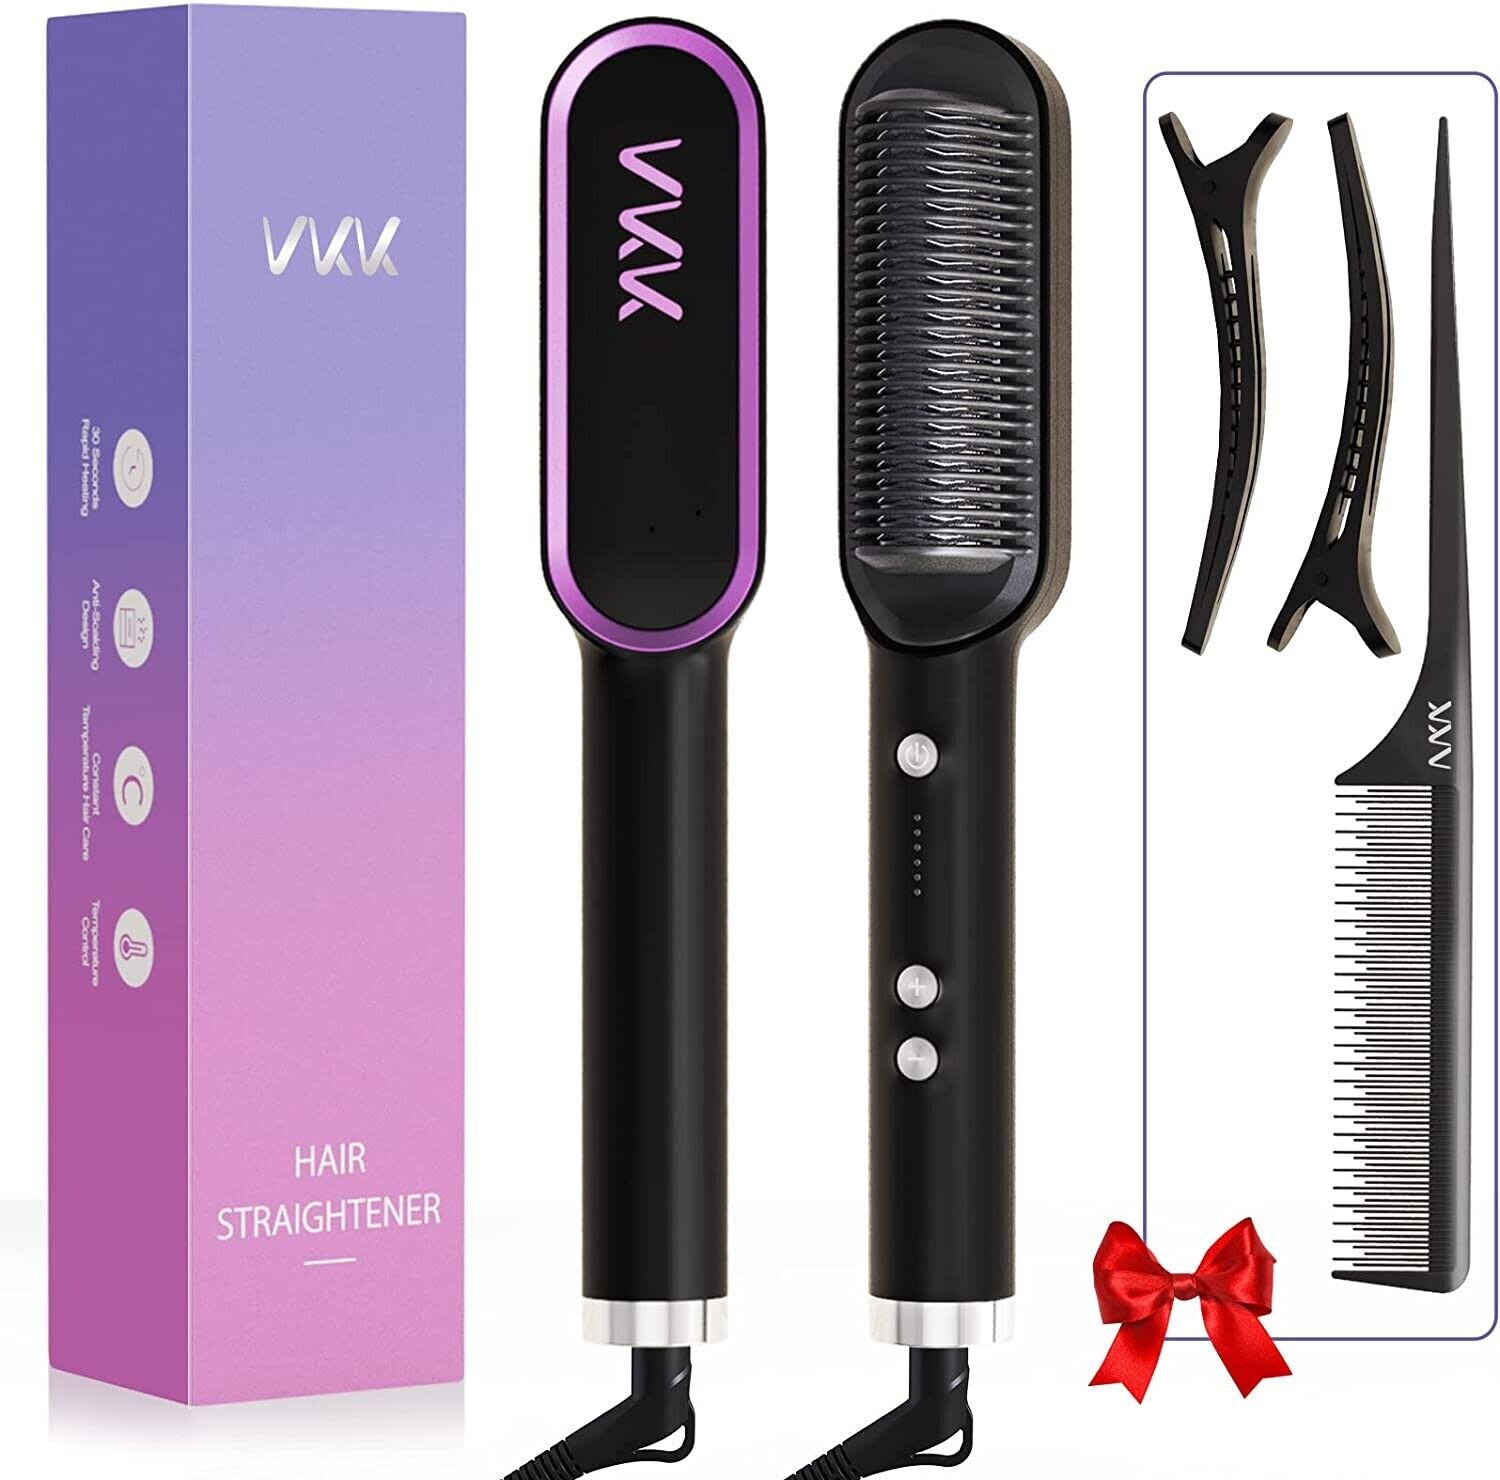 VKK Hair Straightener Brush_1